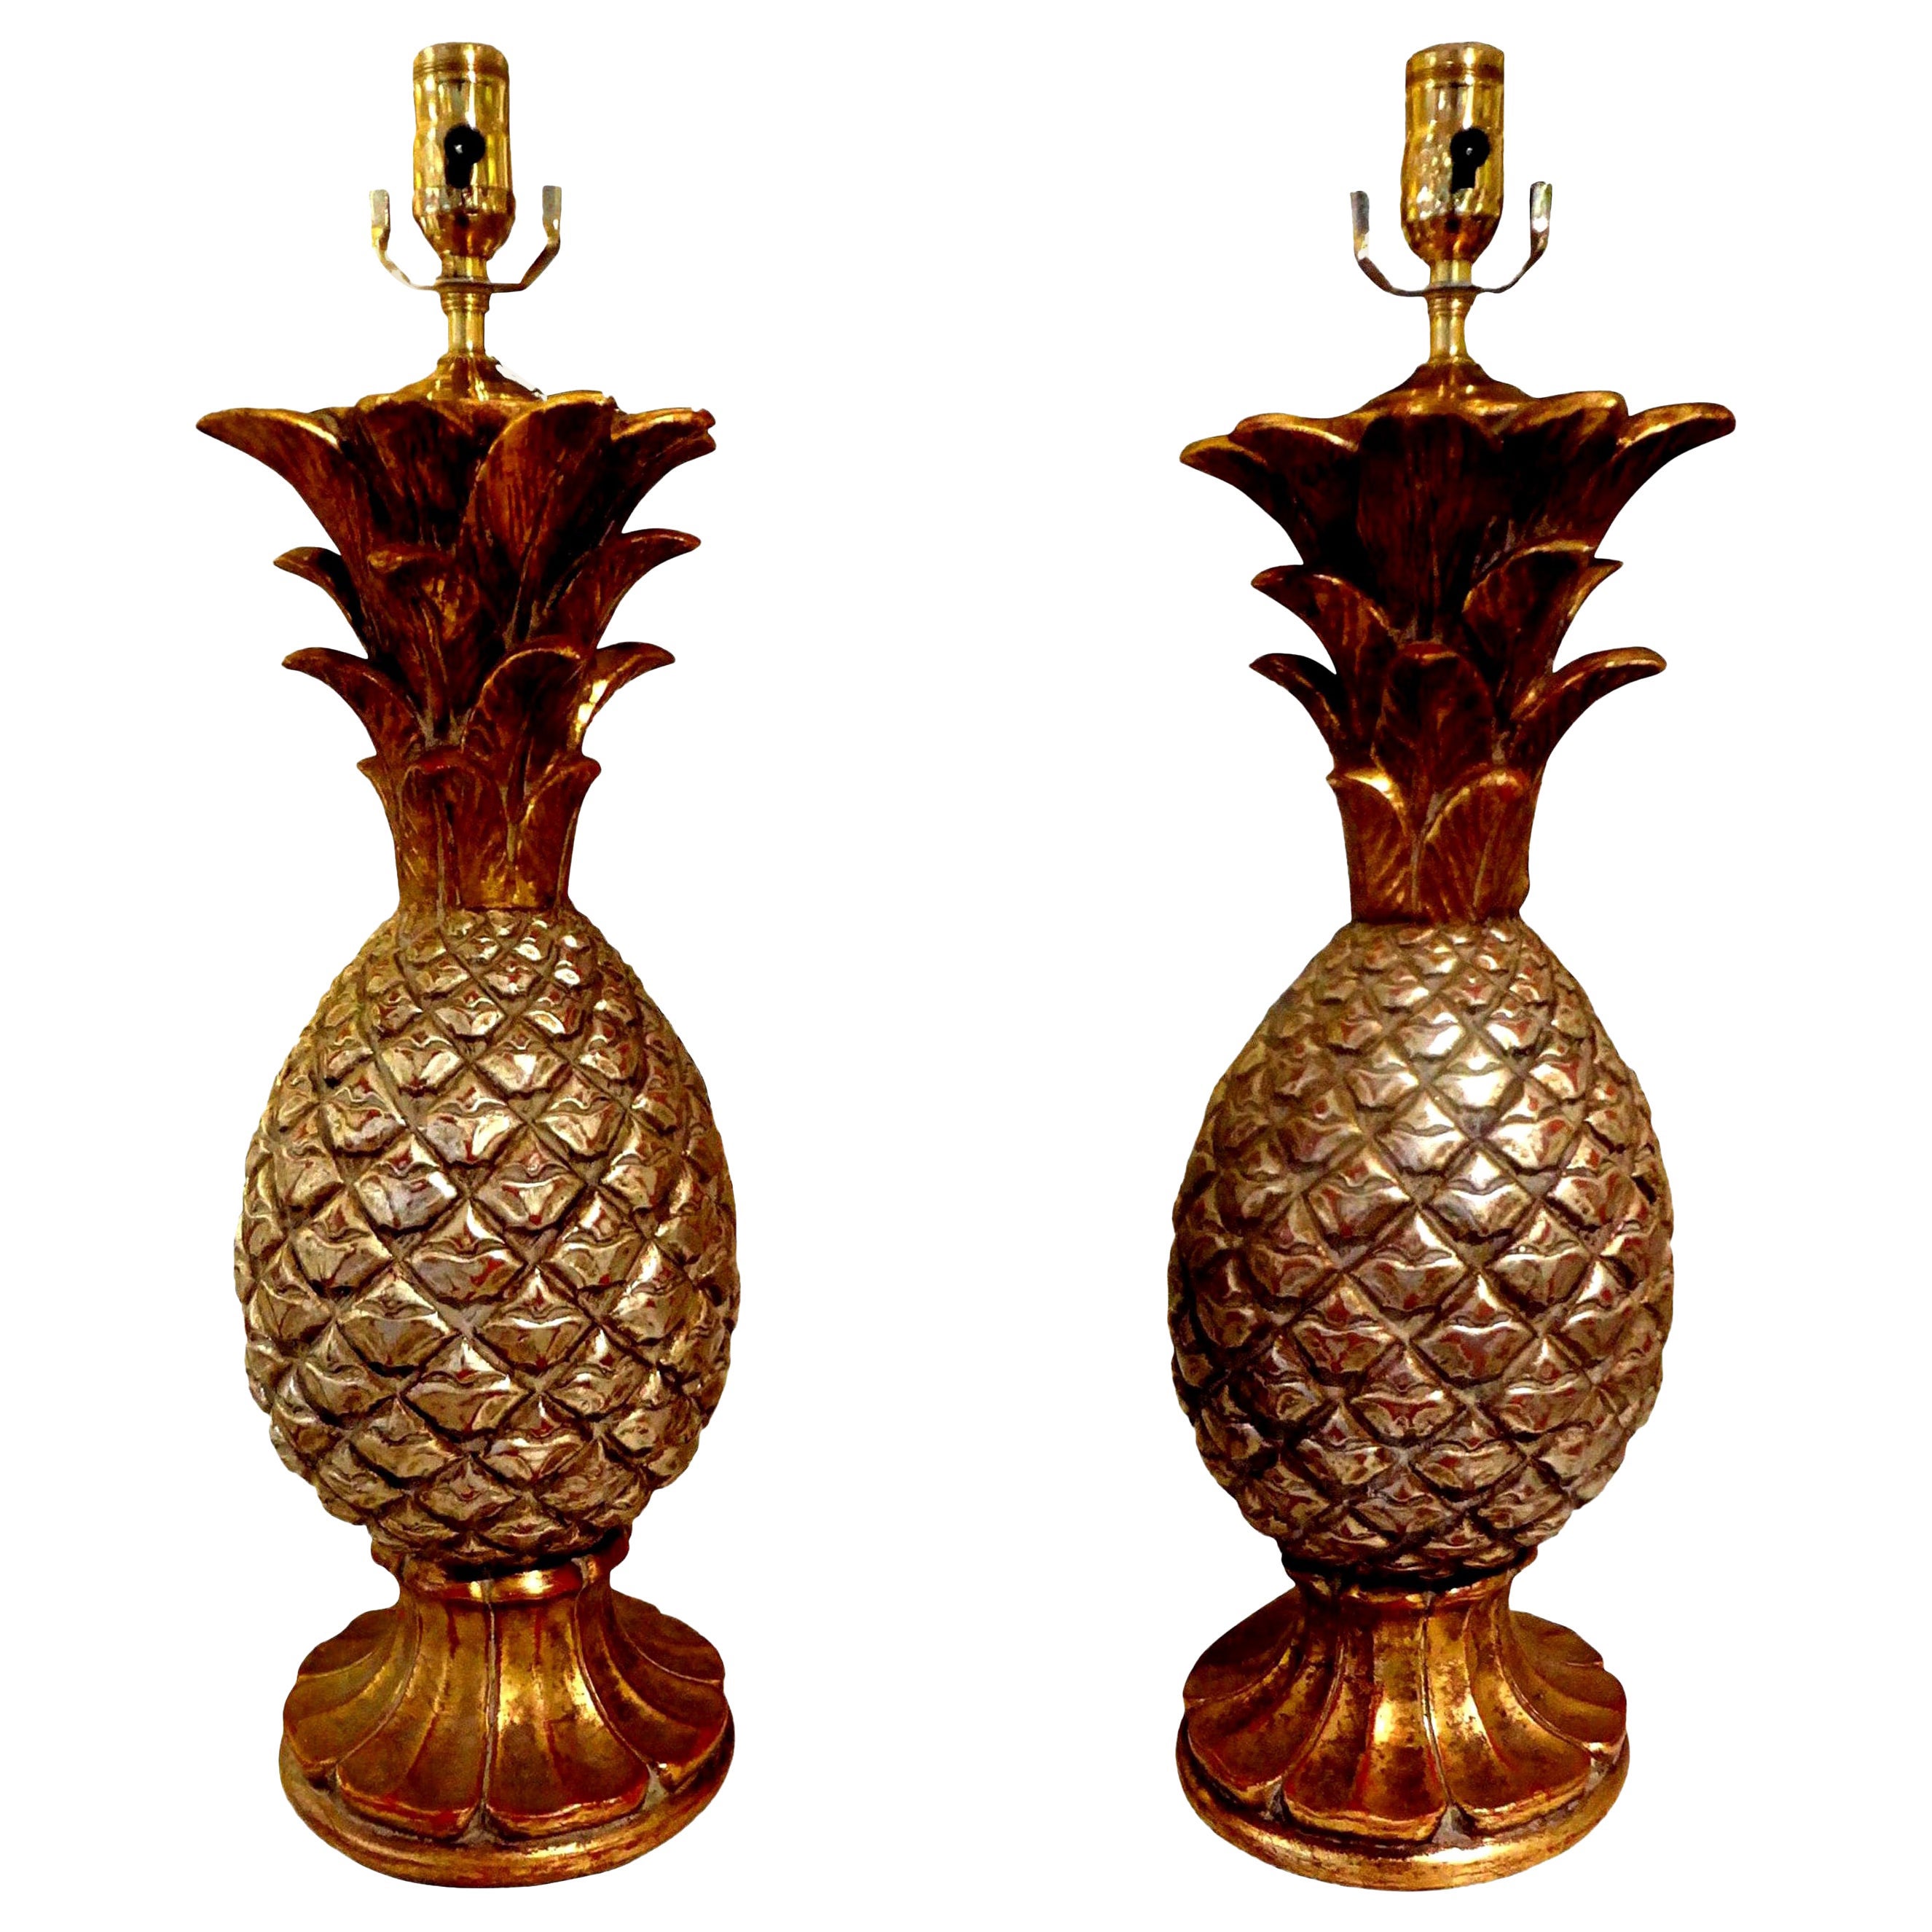 Paire de lampes ananas italiennes vintage en terre cuite dorée